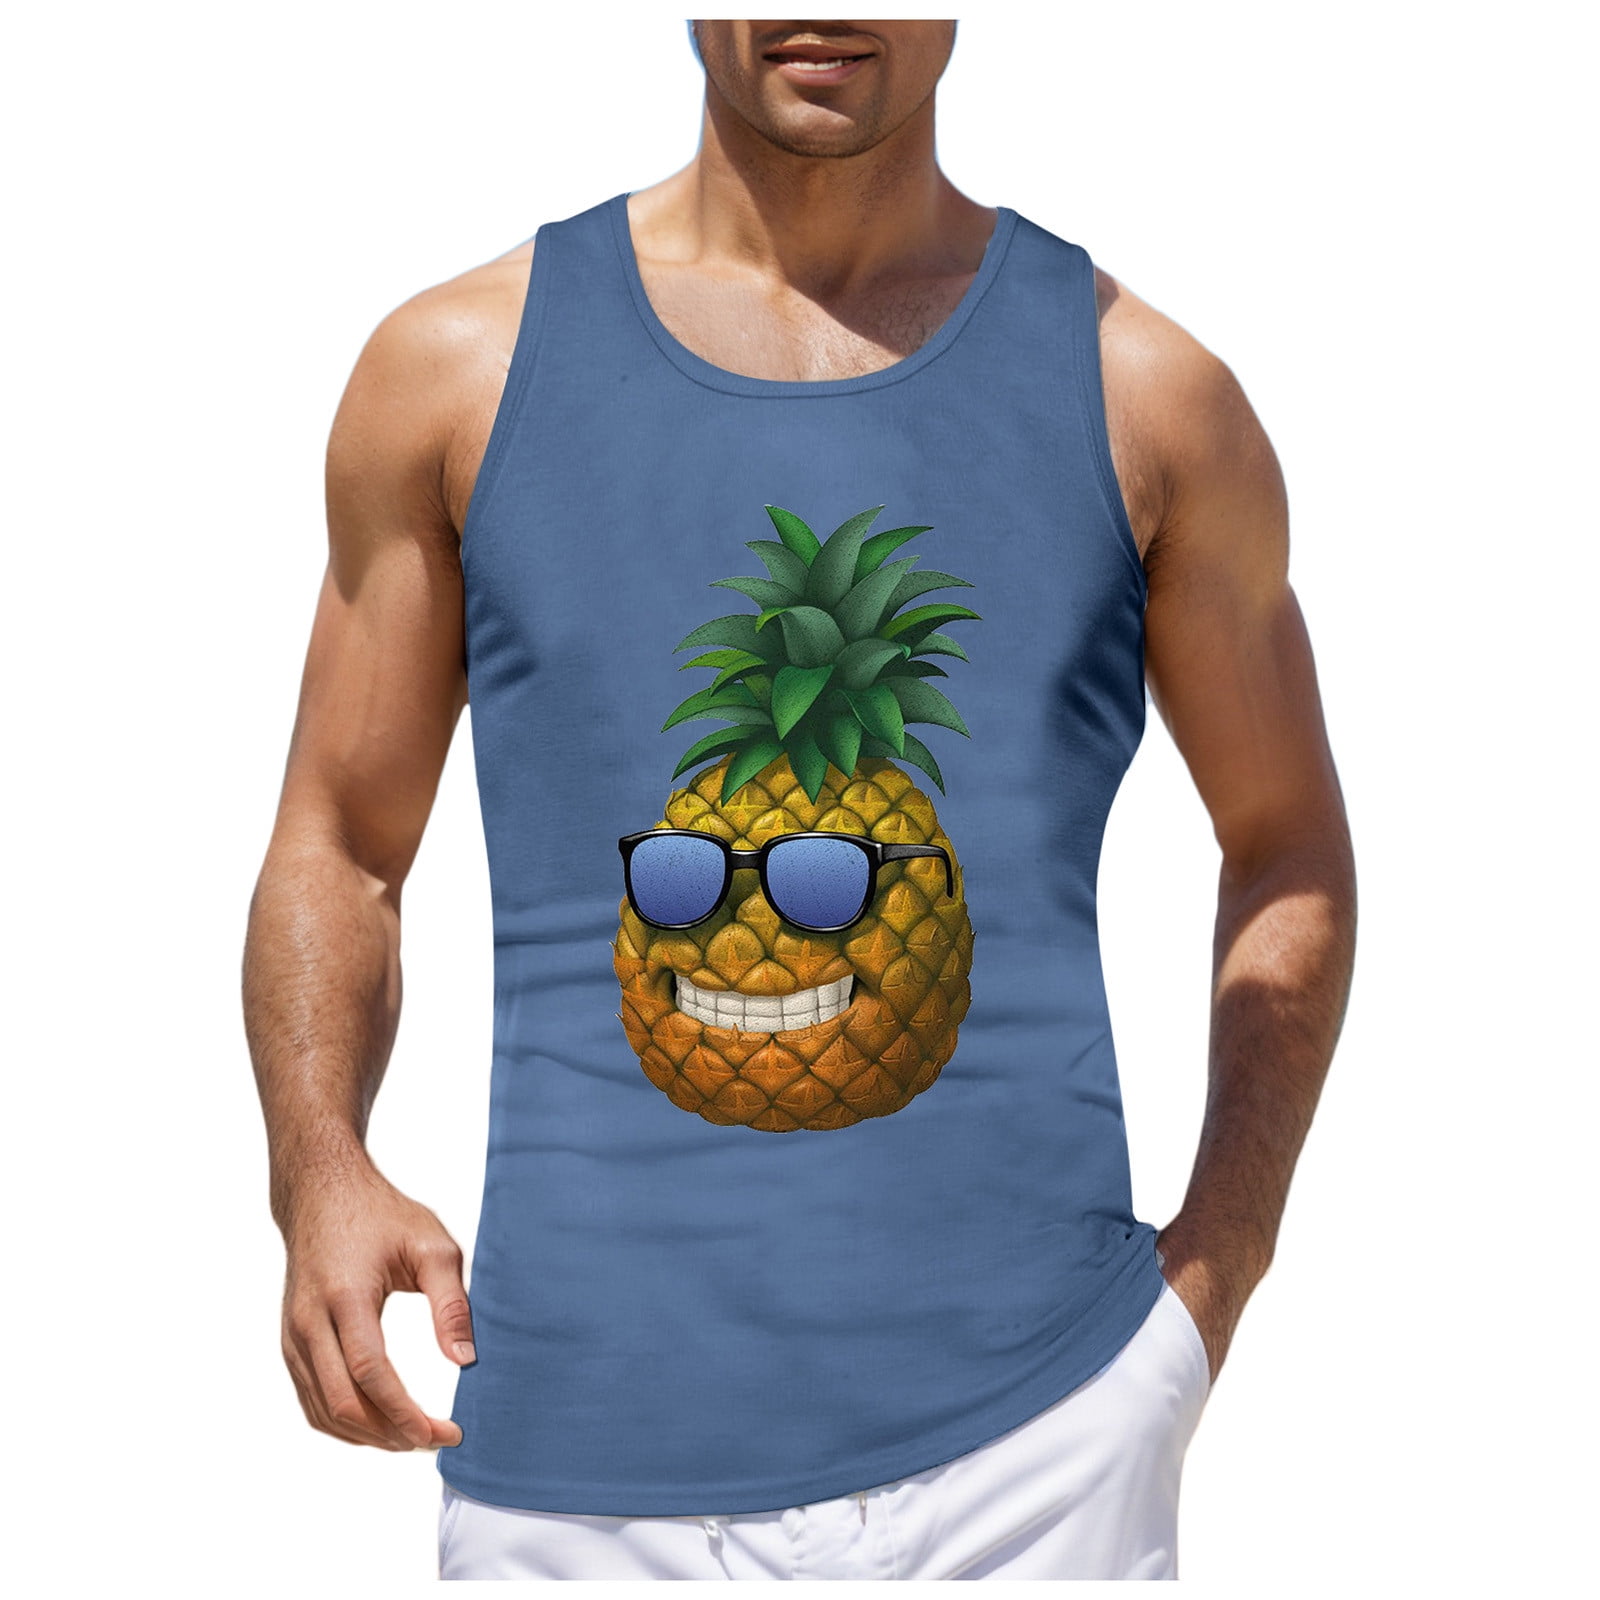 AdBFJAF Workout Tank Tops for Men Cotton Mens Summer Vacation Beach ...